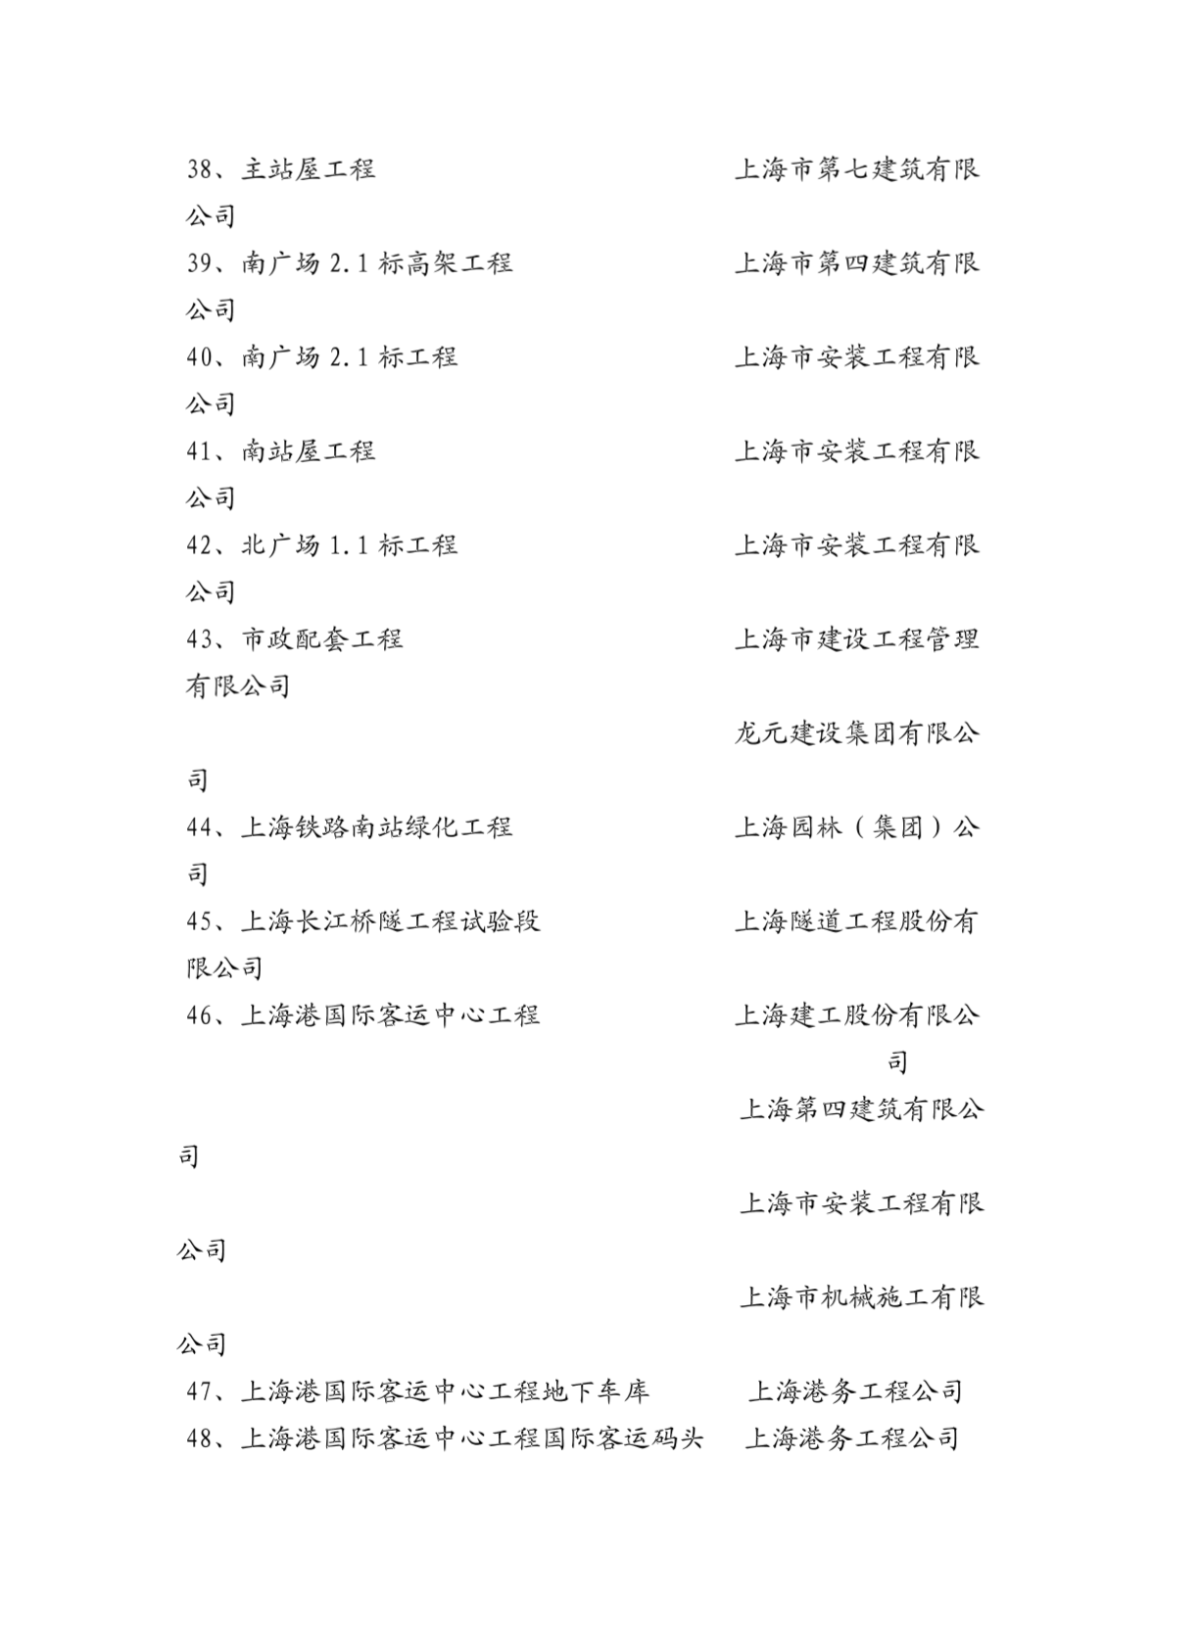 2005年度上海市文明工地、文明场站名单-图一